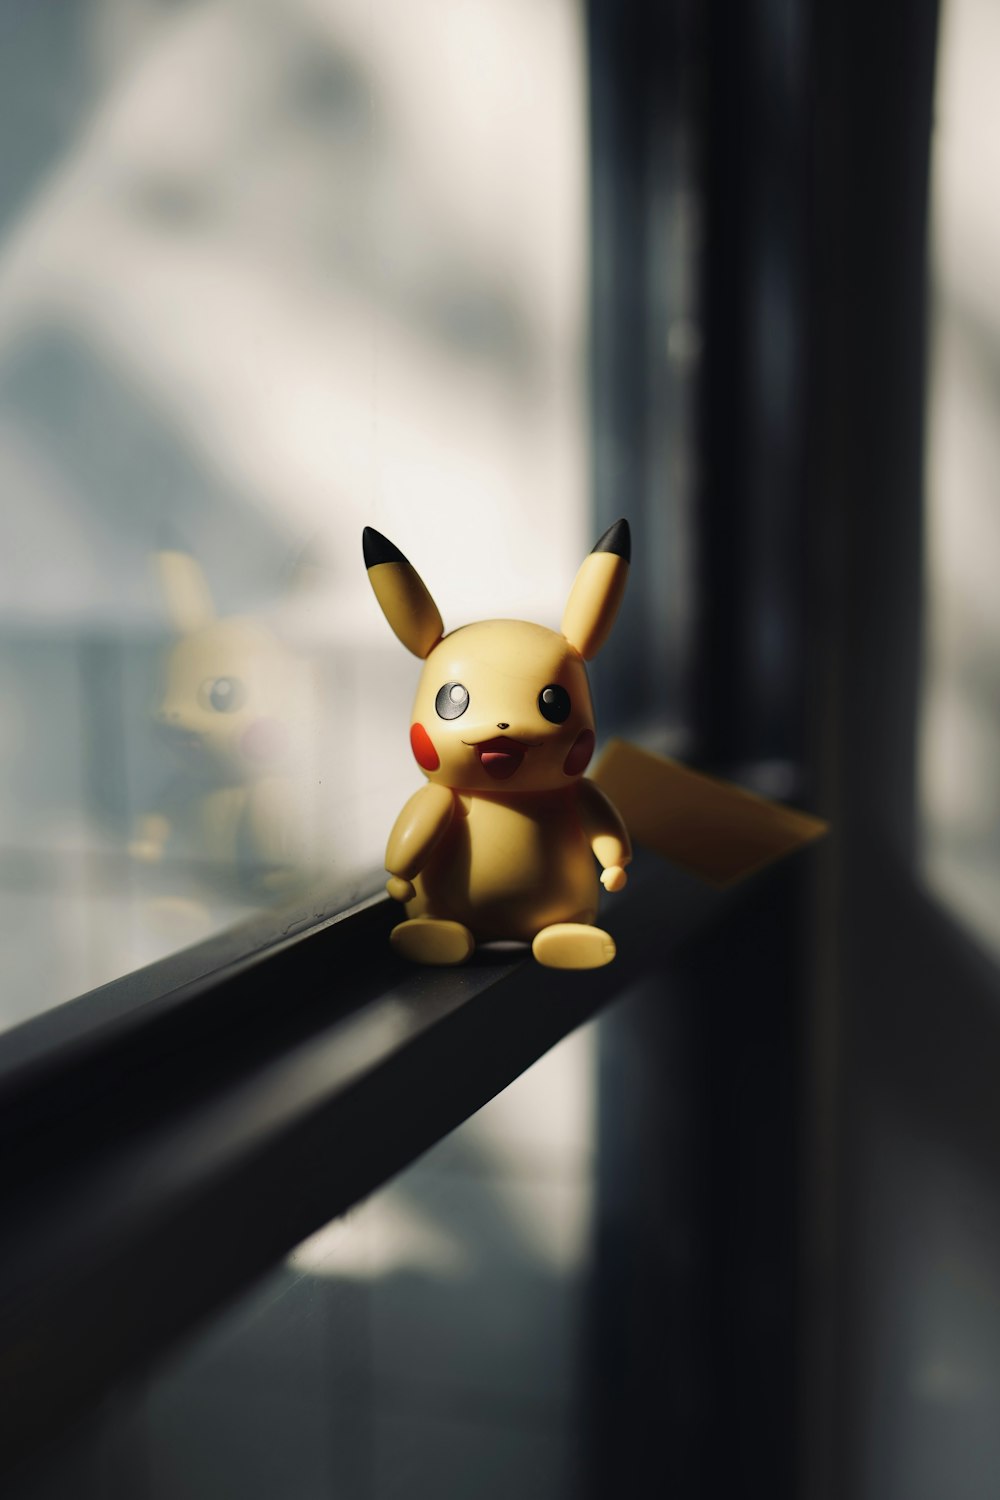 Un pikachu de juguete sentado en el alféizar de una ventana